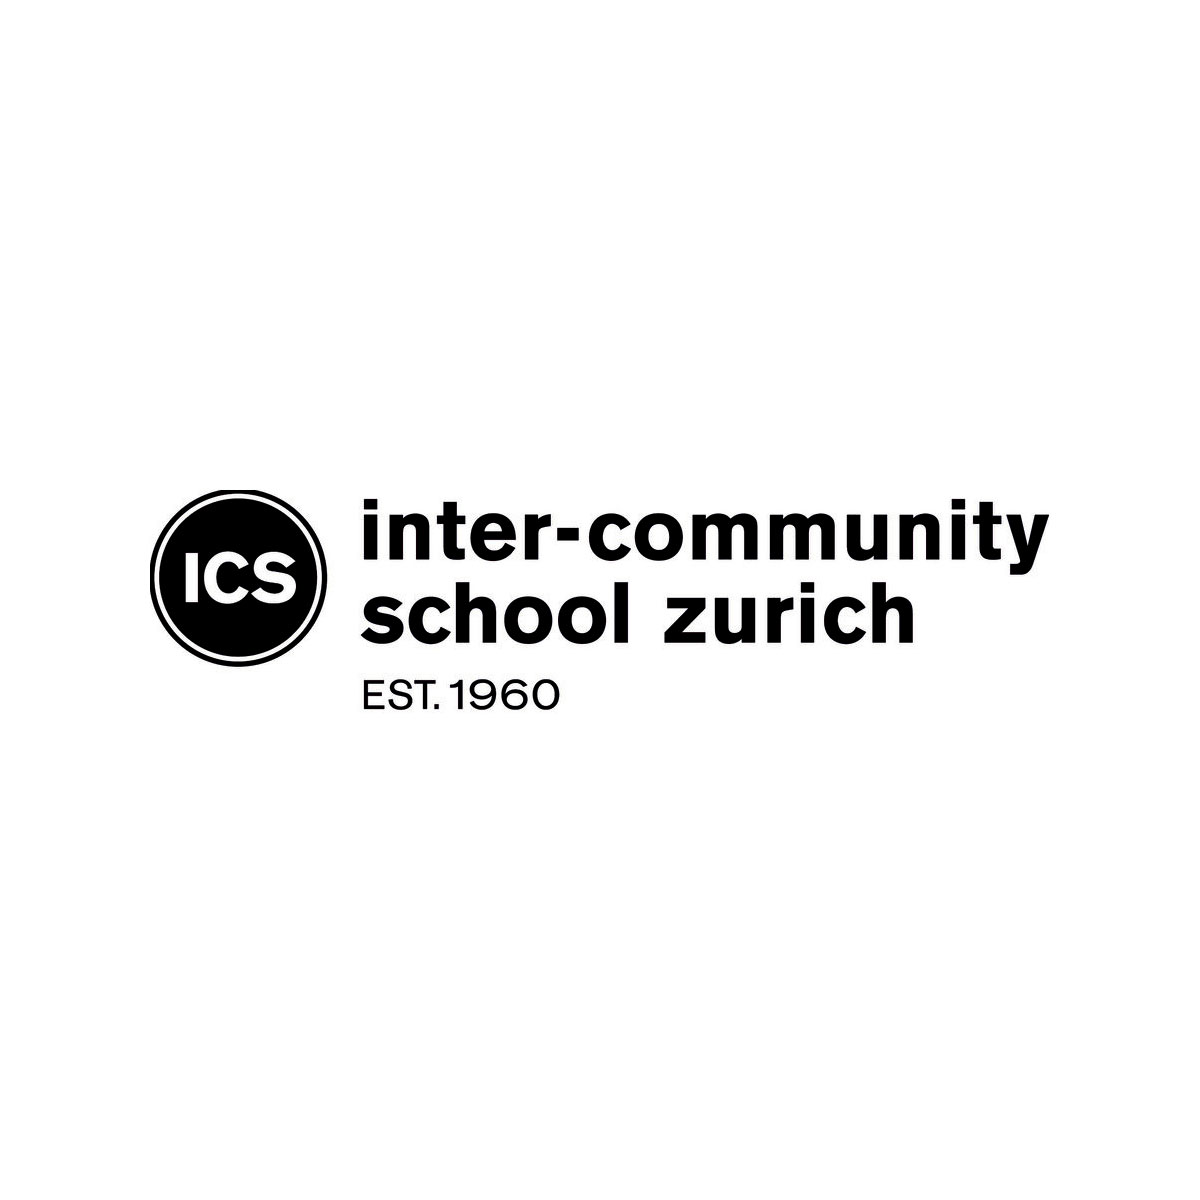 ICS Inter-Community School Zurich